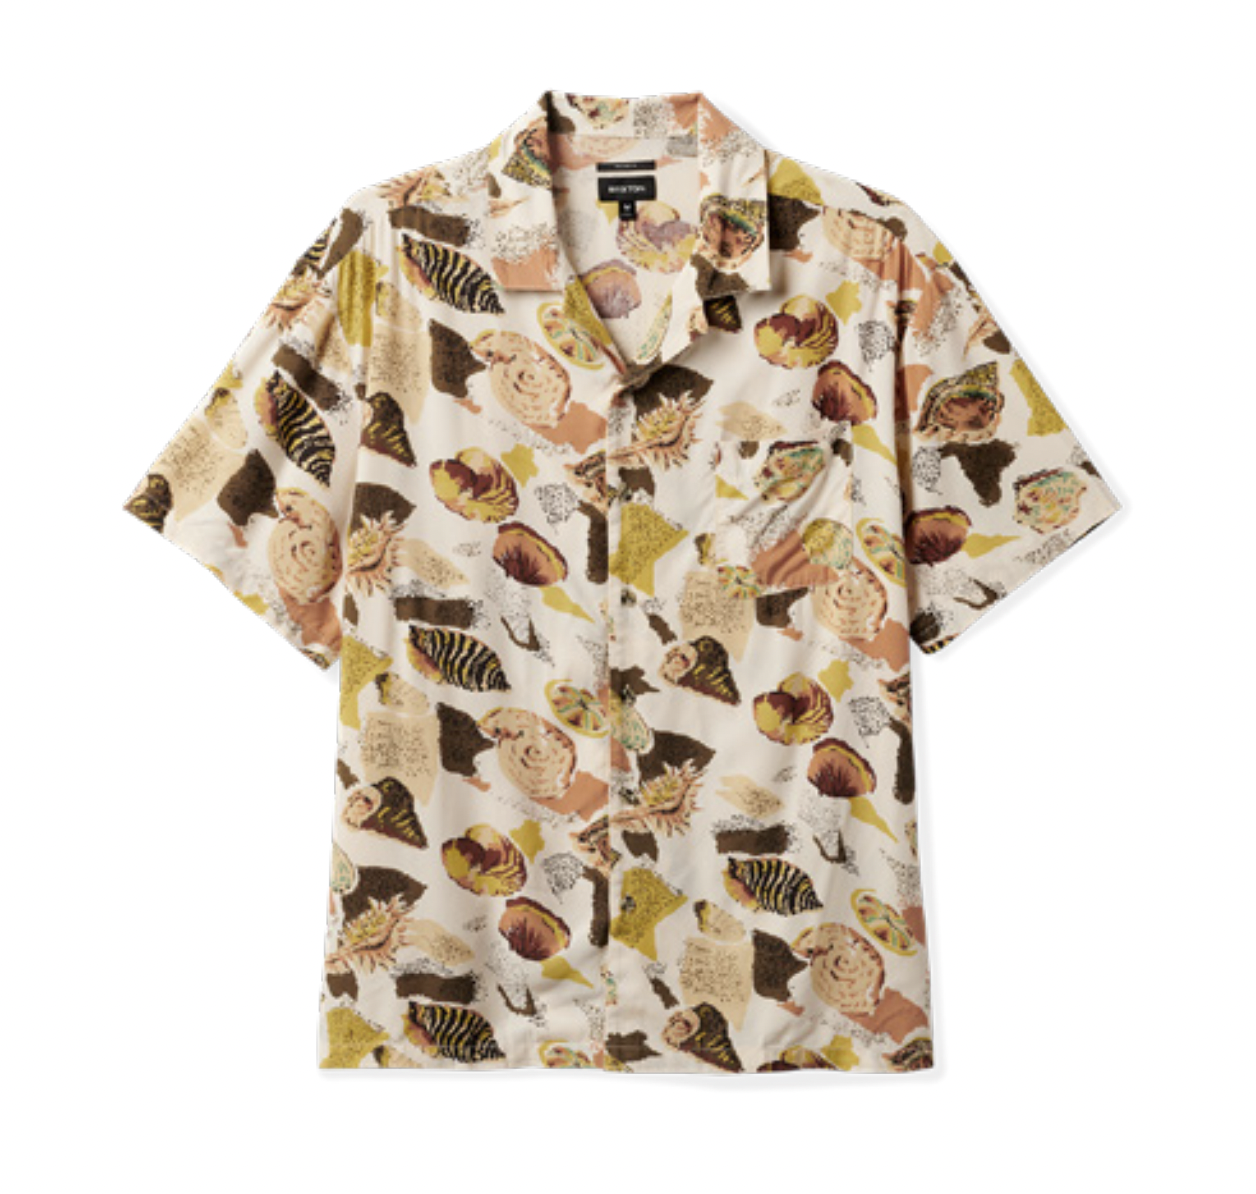 Bunker Reserve S/S Shirt - Multi Shell Print